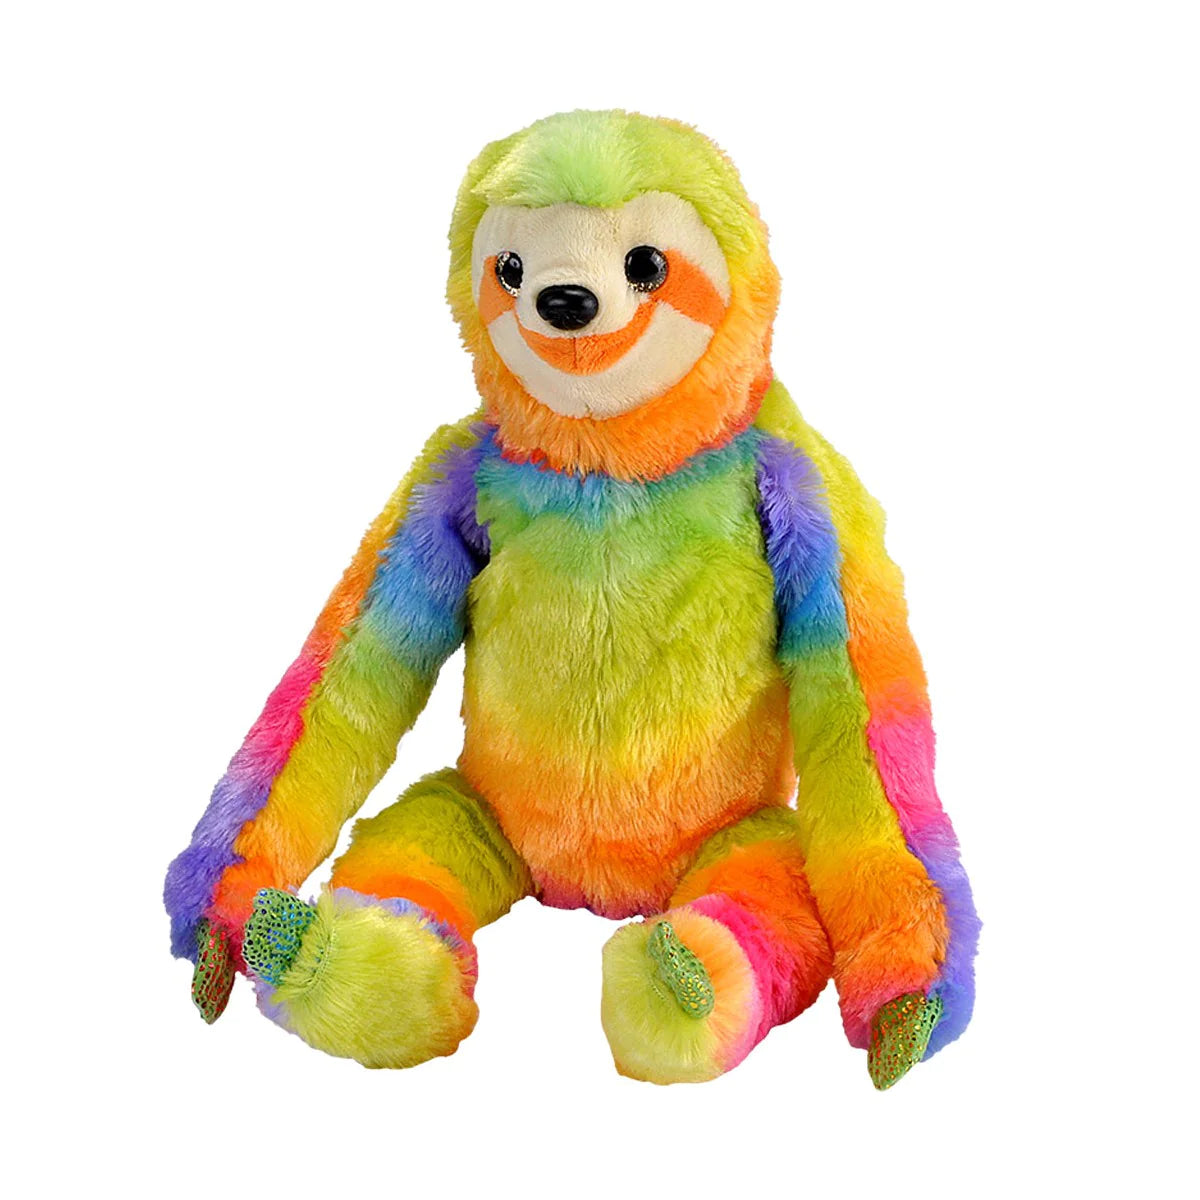 Rainbowkins Sloth Plush